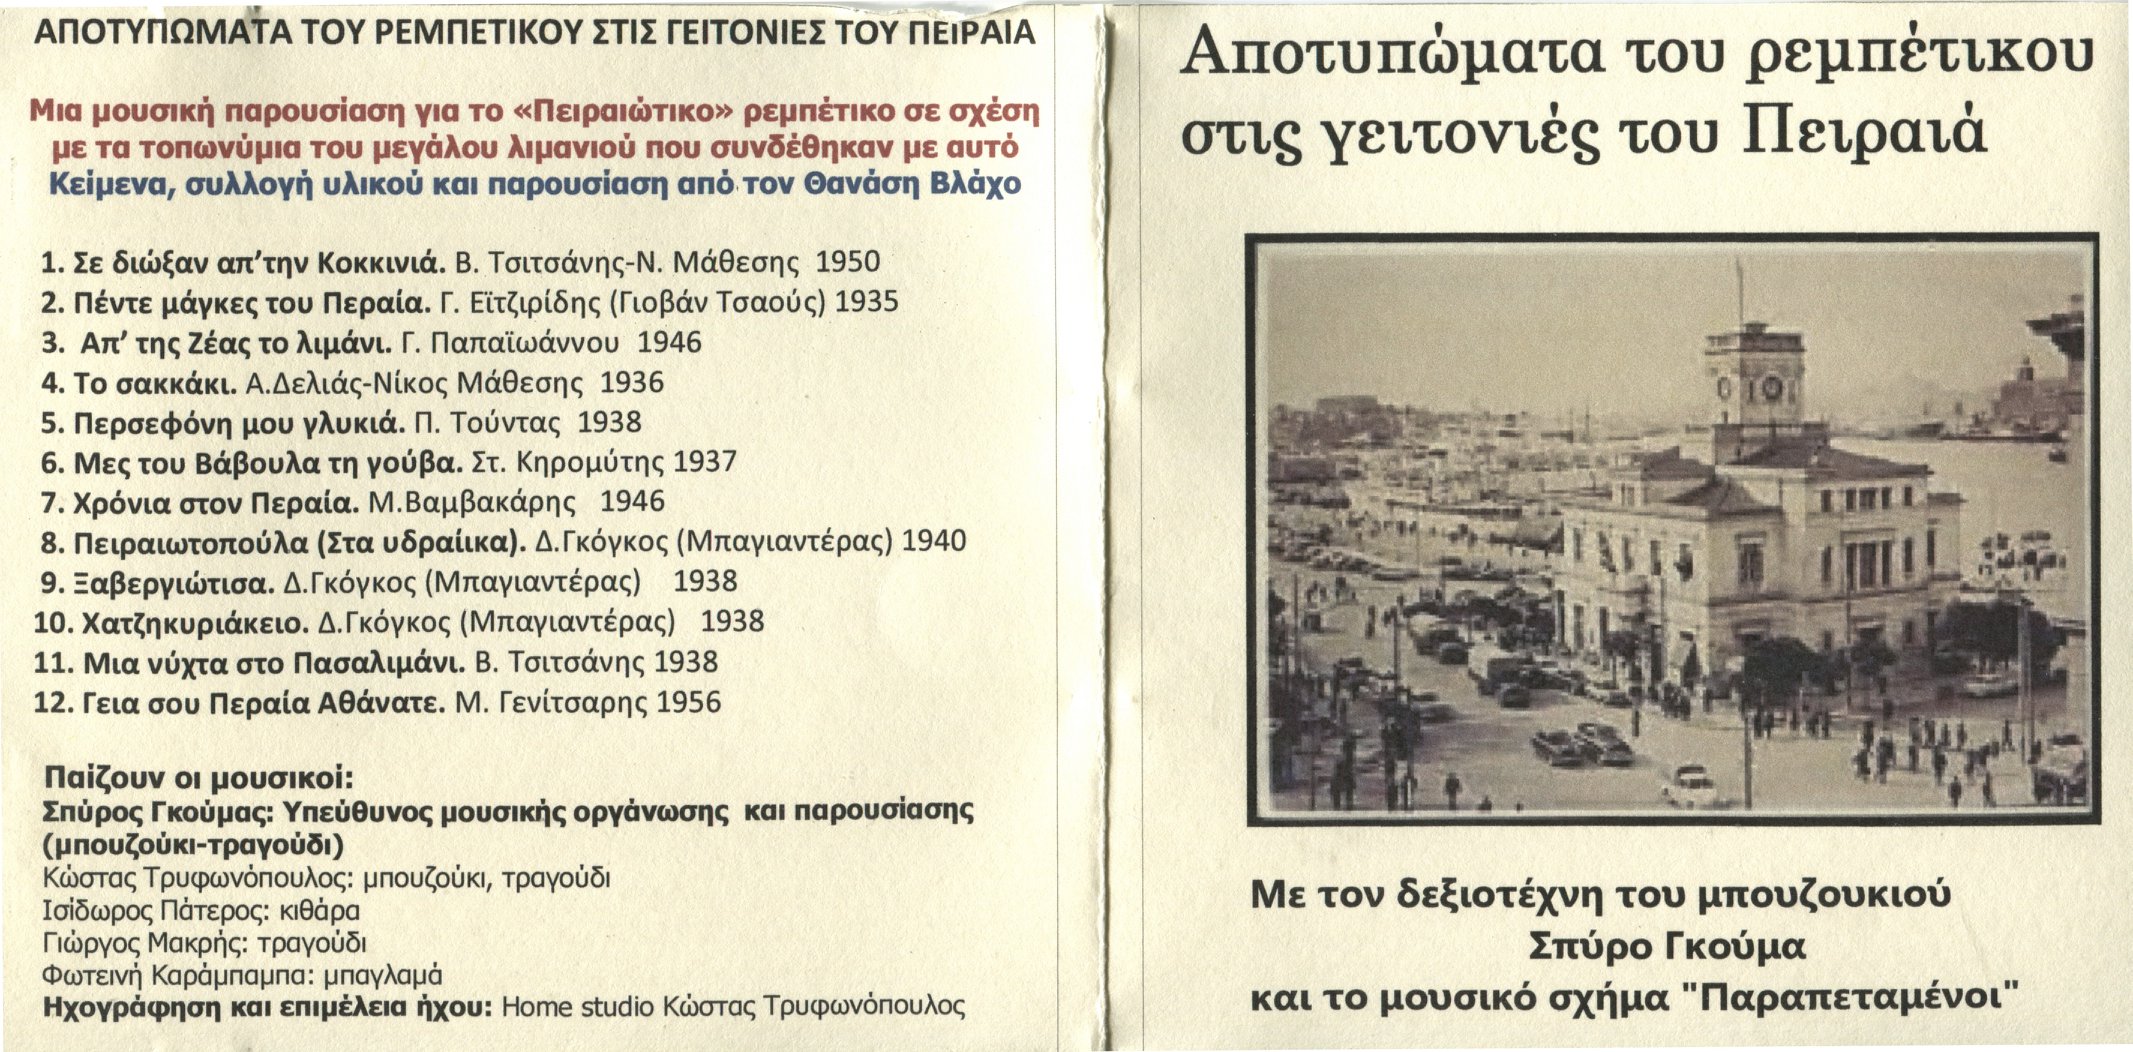 “Πρέπει να ξέρεις μηχανή να κόψεις μαύρα μάτια” – Αποτυπώματα του Ρεμπέτικου στις γειτονιές του Πειραιά: Η ιστορία μιας σπιτικής ηχογράφησης”